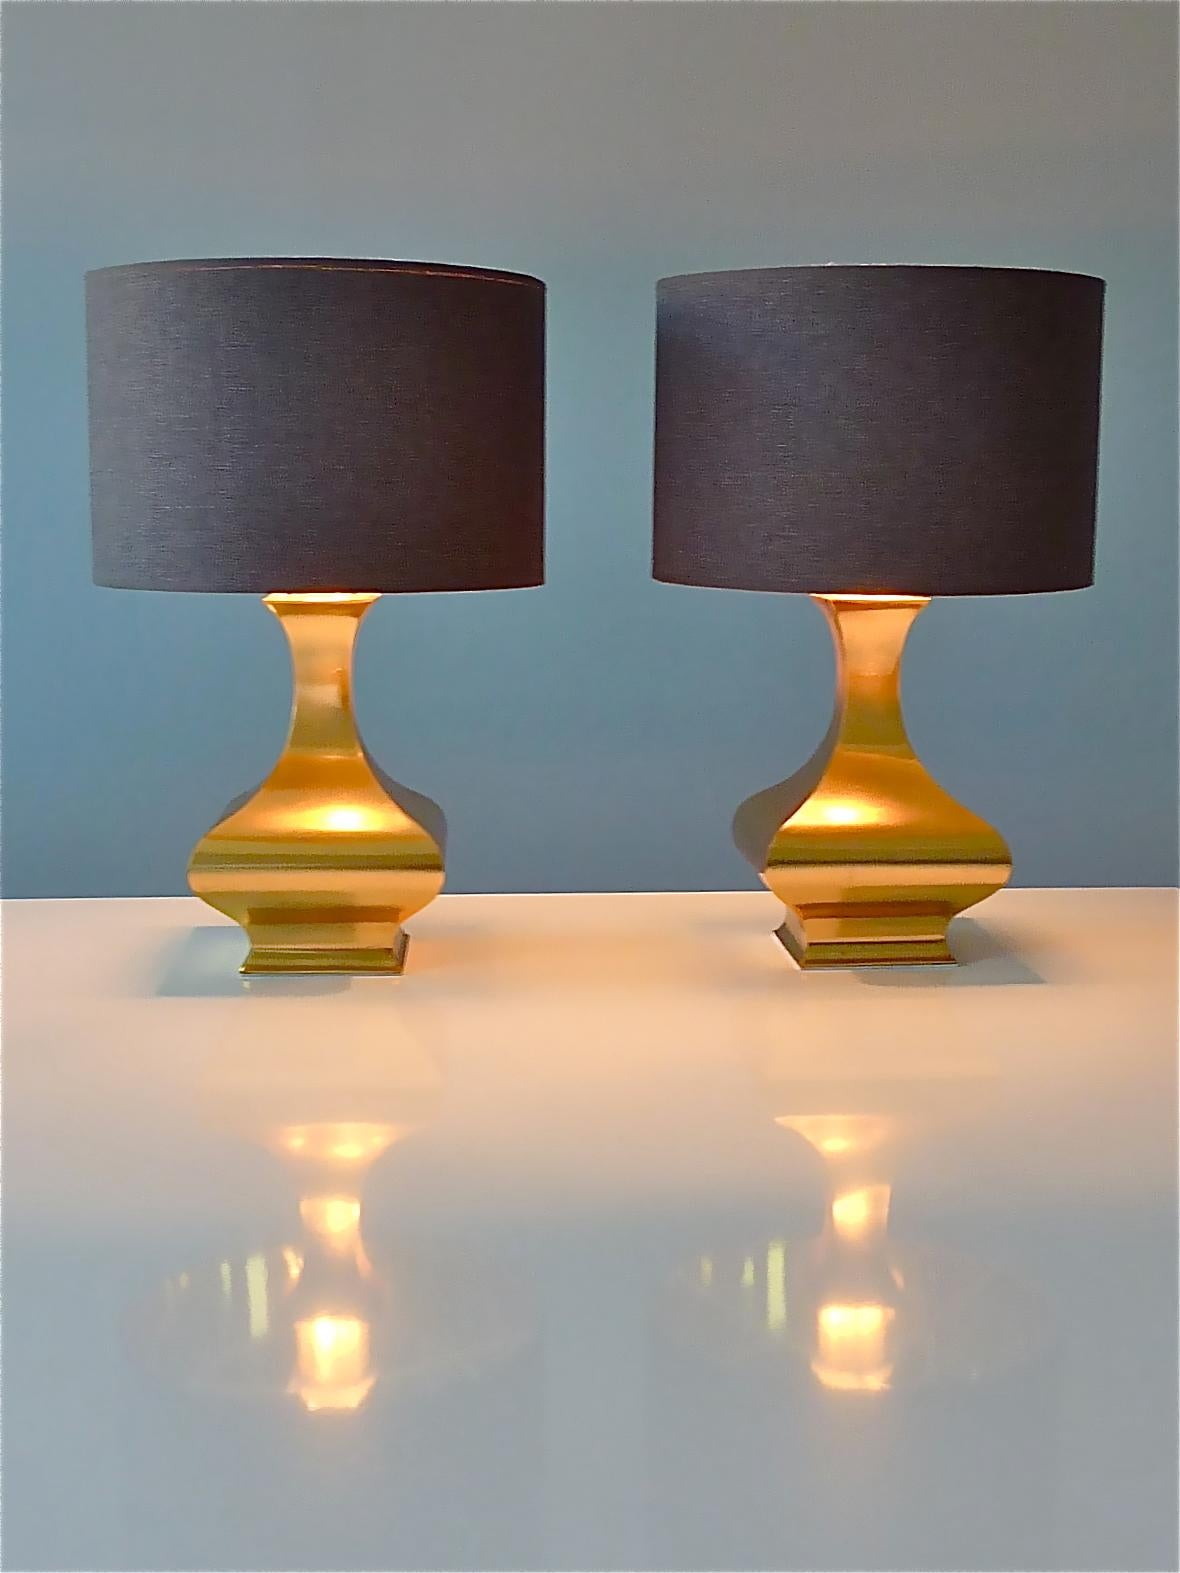 Etonnante paire de lampes de table en métal inoxydable en laiton doré, conçue par Maria Pergay, France vers les années 1970. Chaque lampe de table est dotée d'un raccord en plastique et nécessite une ampoule à vis standard E27 pour s'allumer. Le